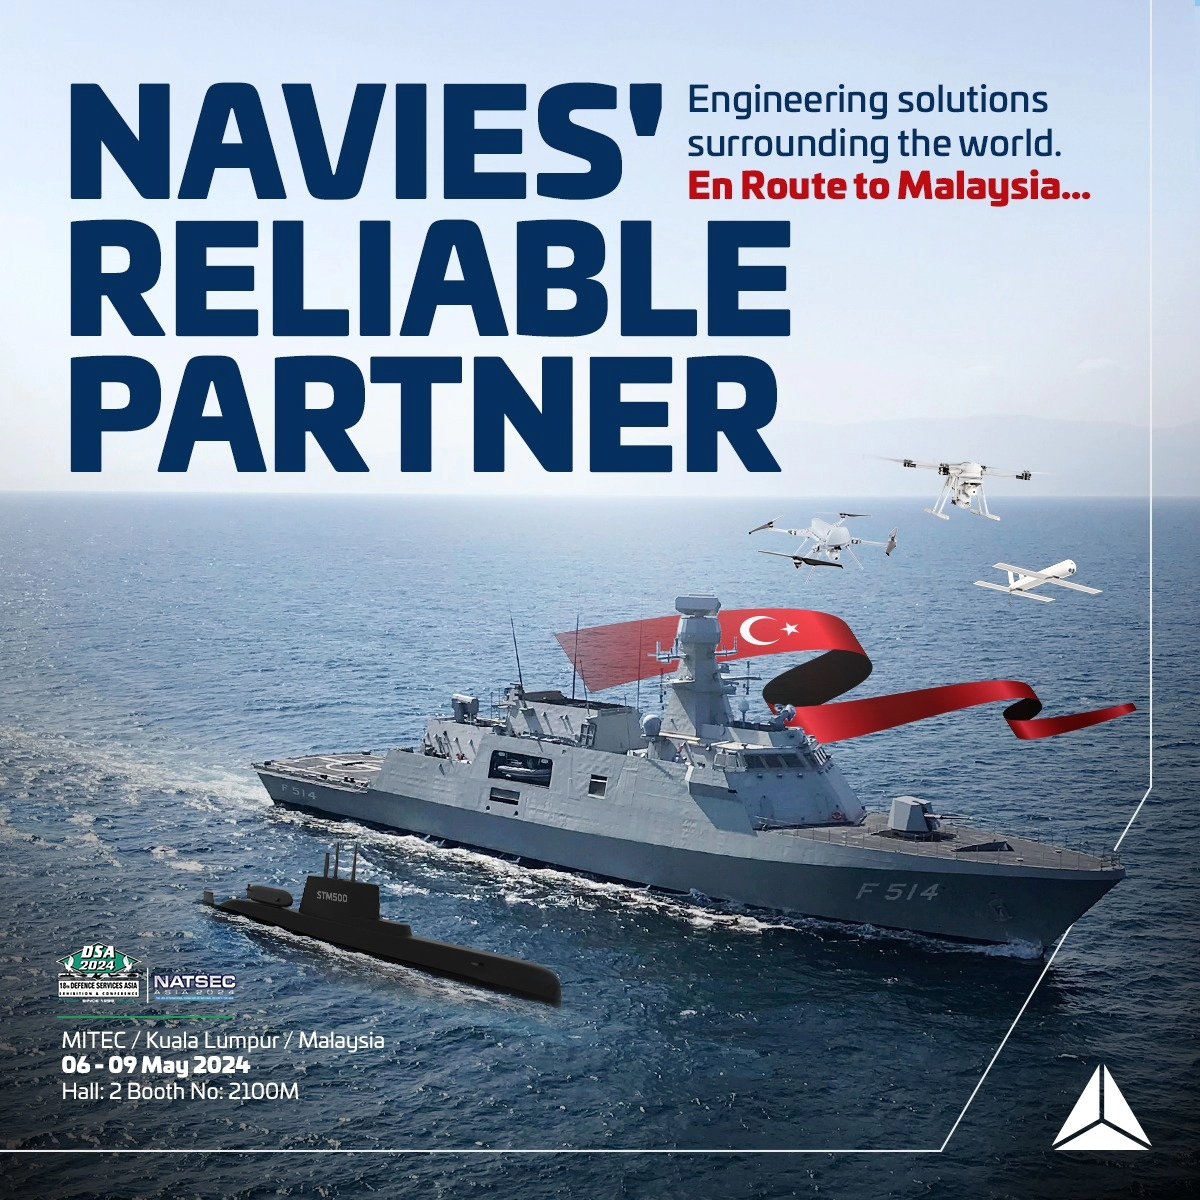 STM, Malezya' da gerçekleştirilecek olan DSA (Defence Service Asia) 2024 Fuarı'nda milli imkanlarla geliştirdiği deniz sistemlerini sergileyecek. 6-9 Mayıs arası gerçekleşecek fuarda askeri deniz platformlarını ve taktik mini İHA sistemlerini Güney Asya pazarına sunmayı…